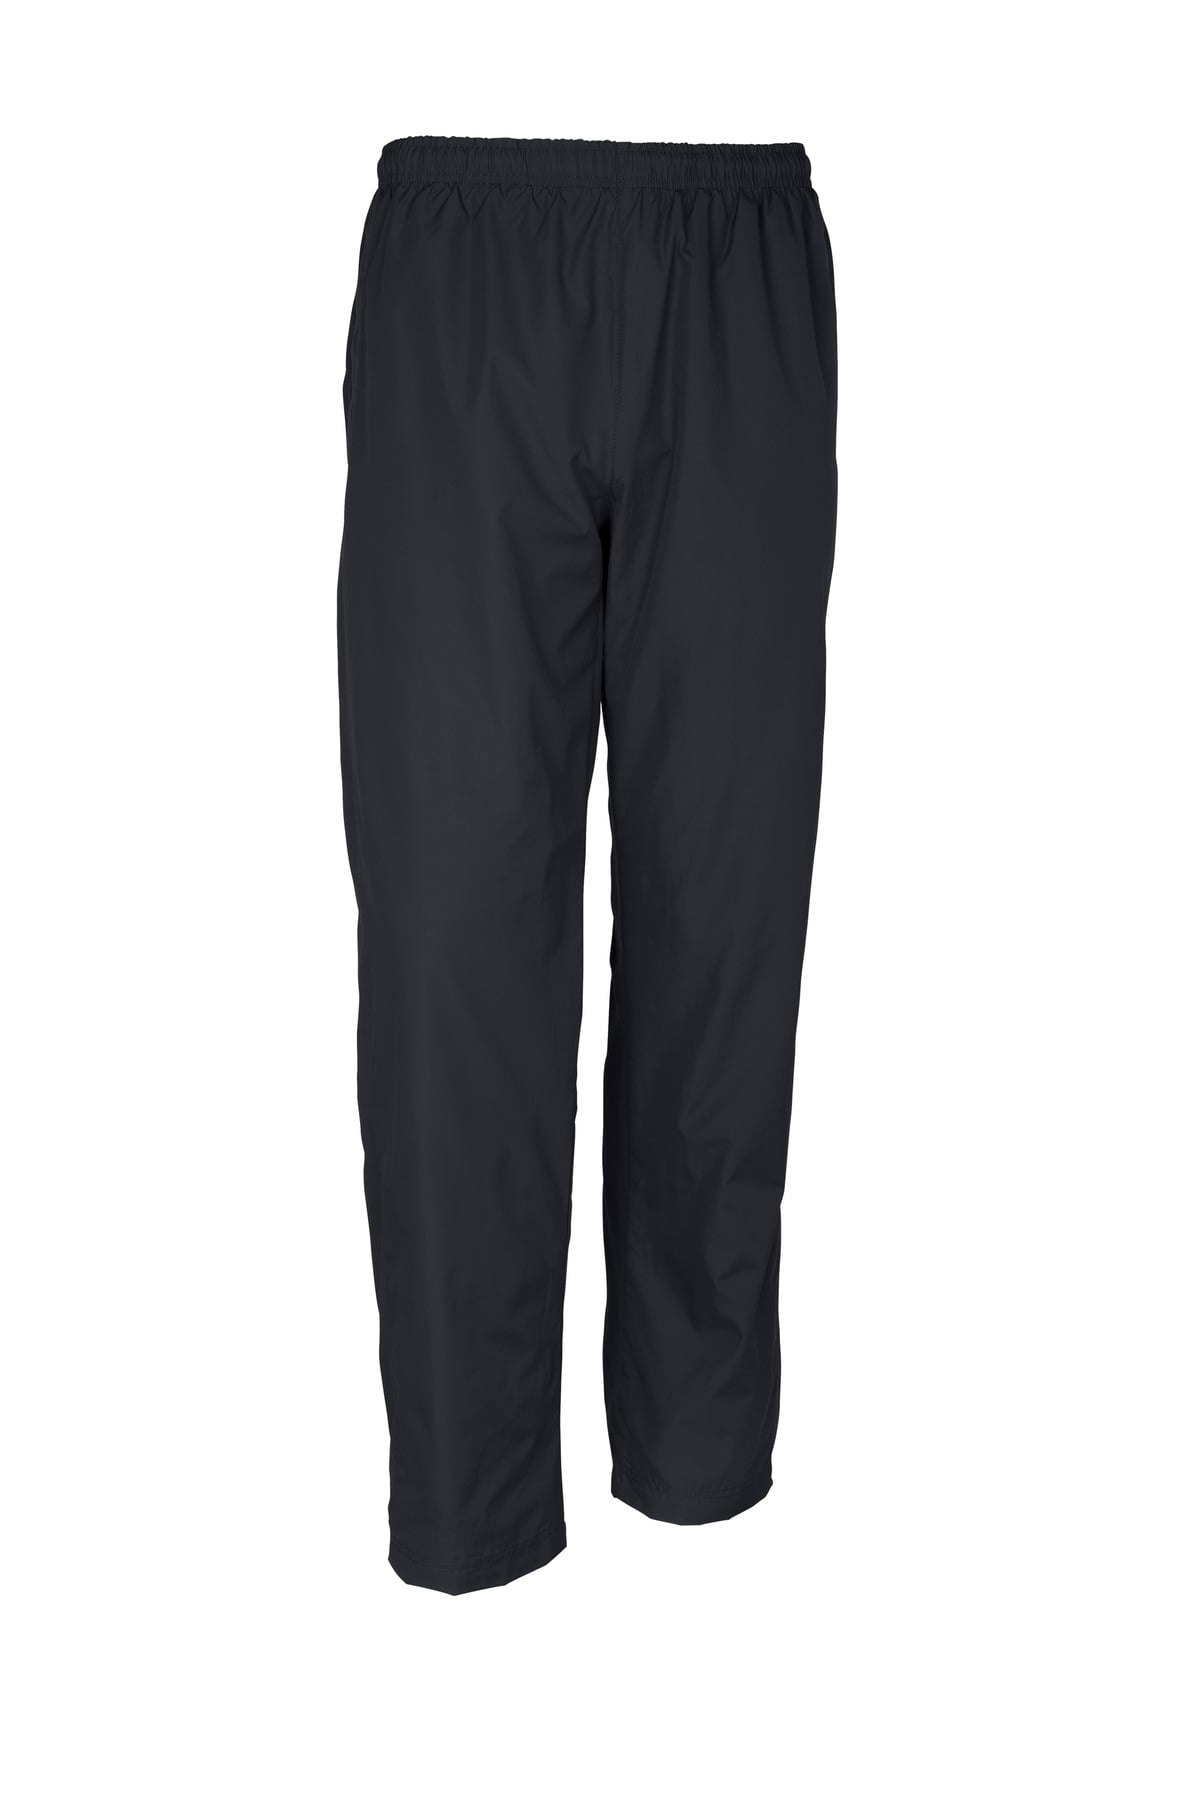 Sport Tek Adult Male Men Plain Wind Pant Graphite Grey 4X-Large